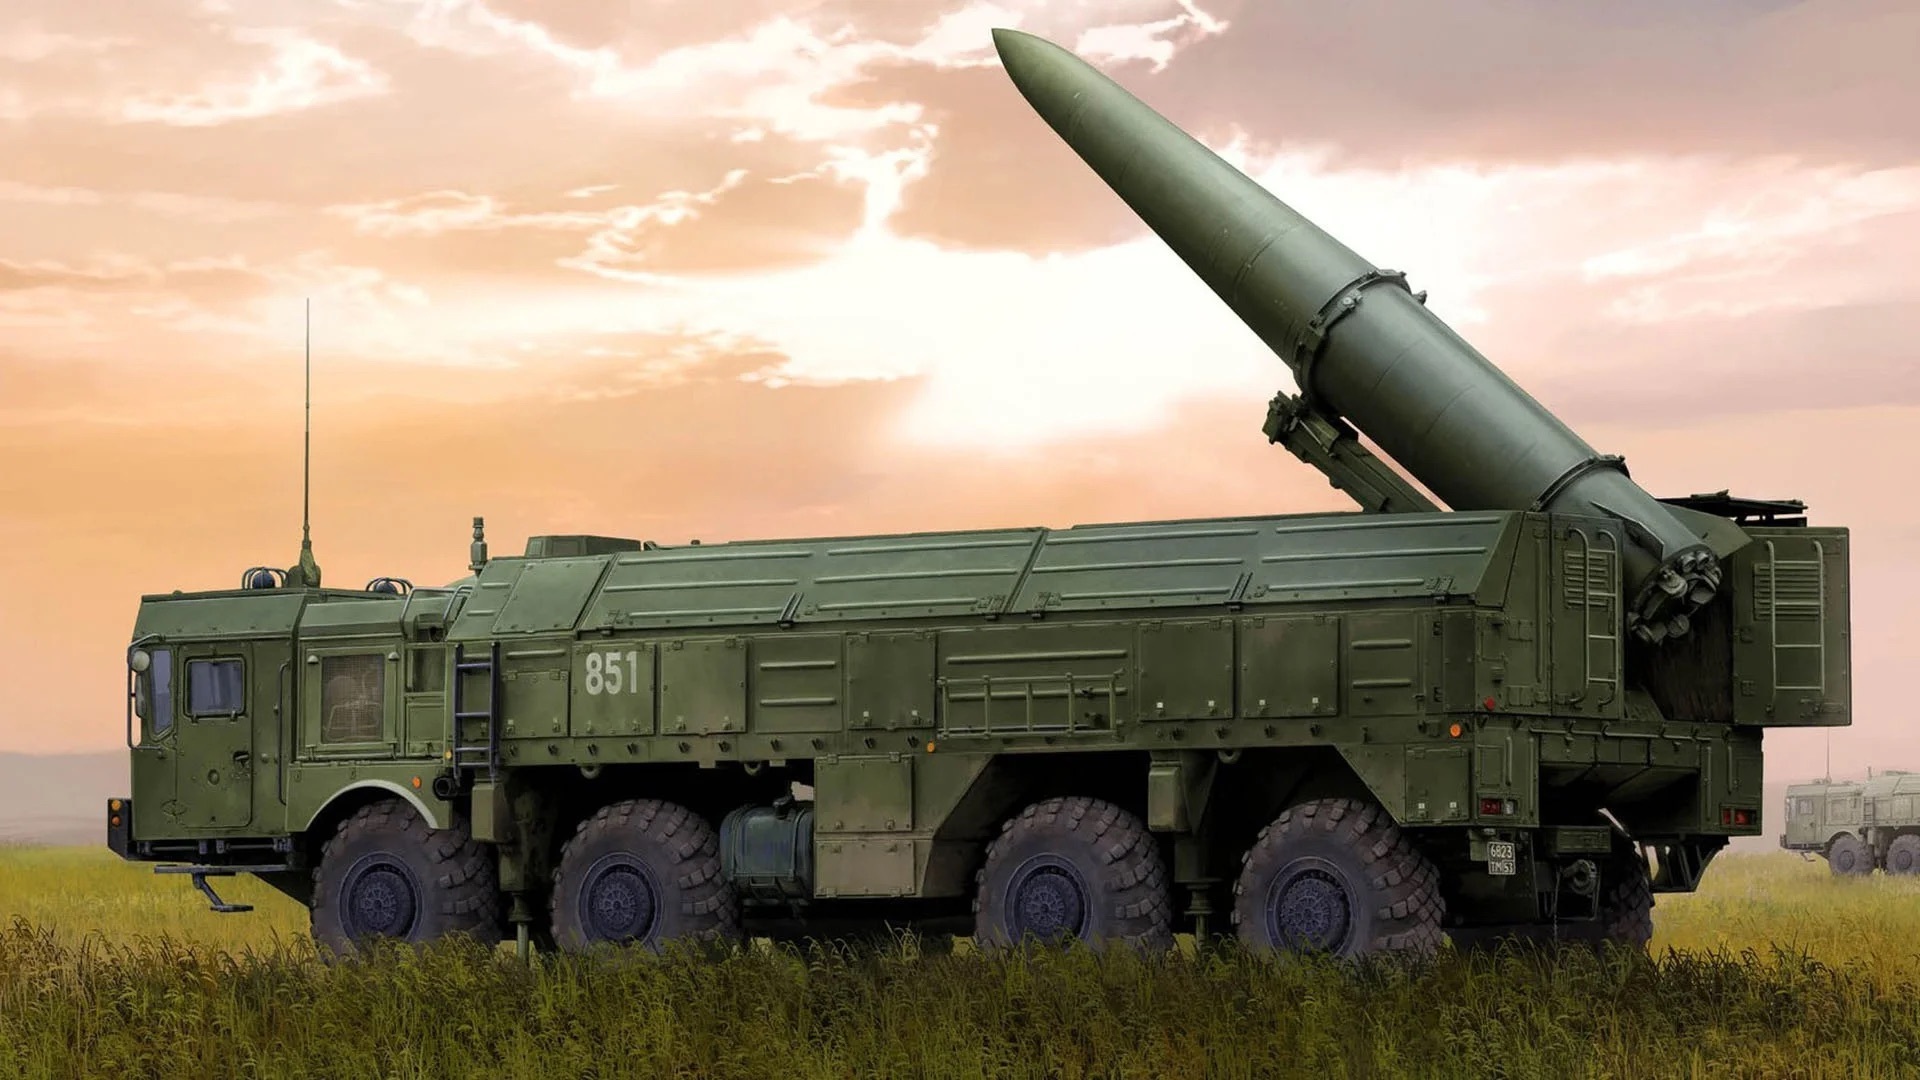 Александр Коц в своем Telegram-канале рассказал о мощности ракетной установки 